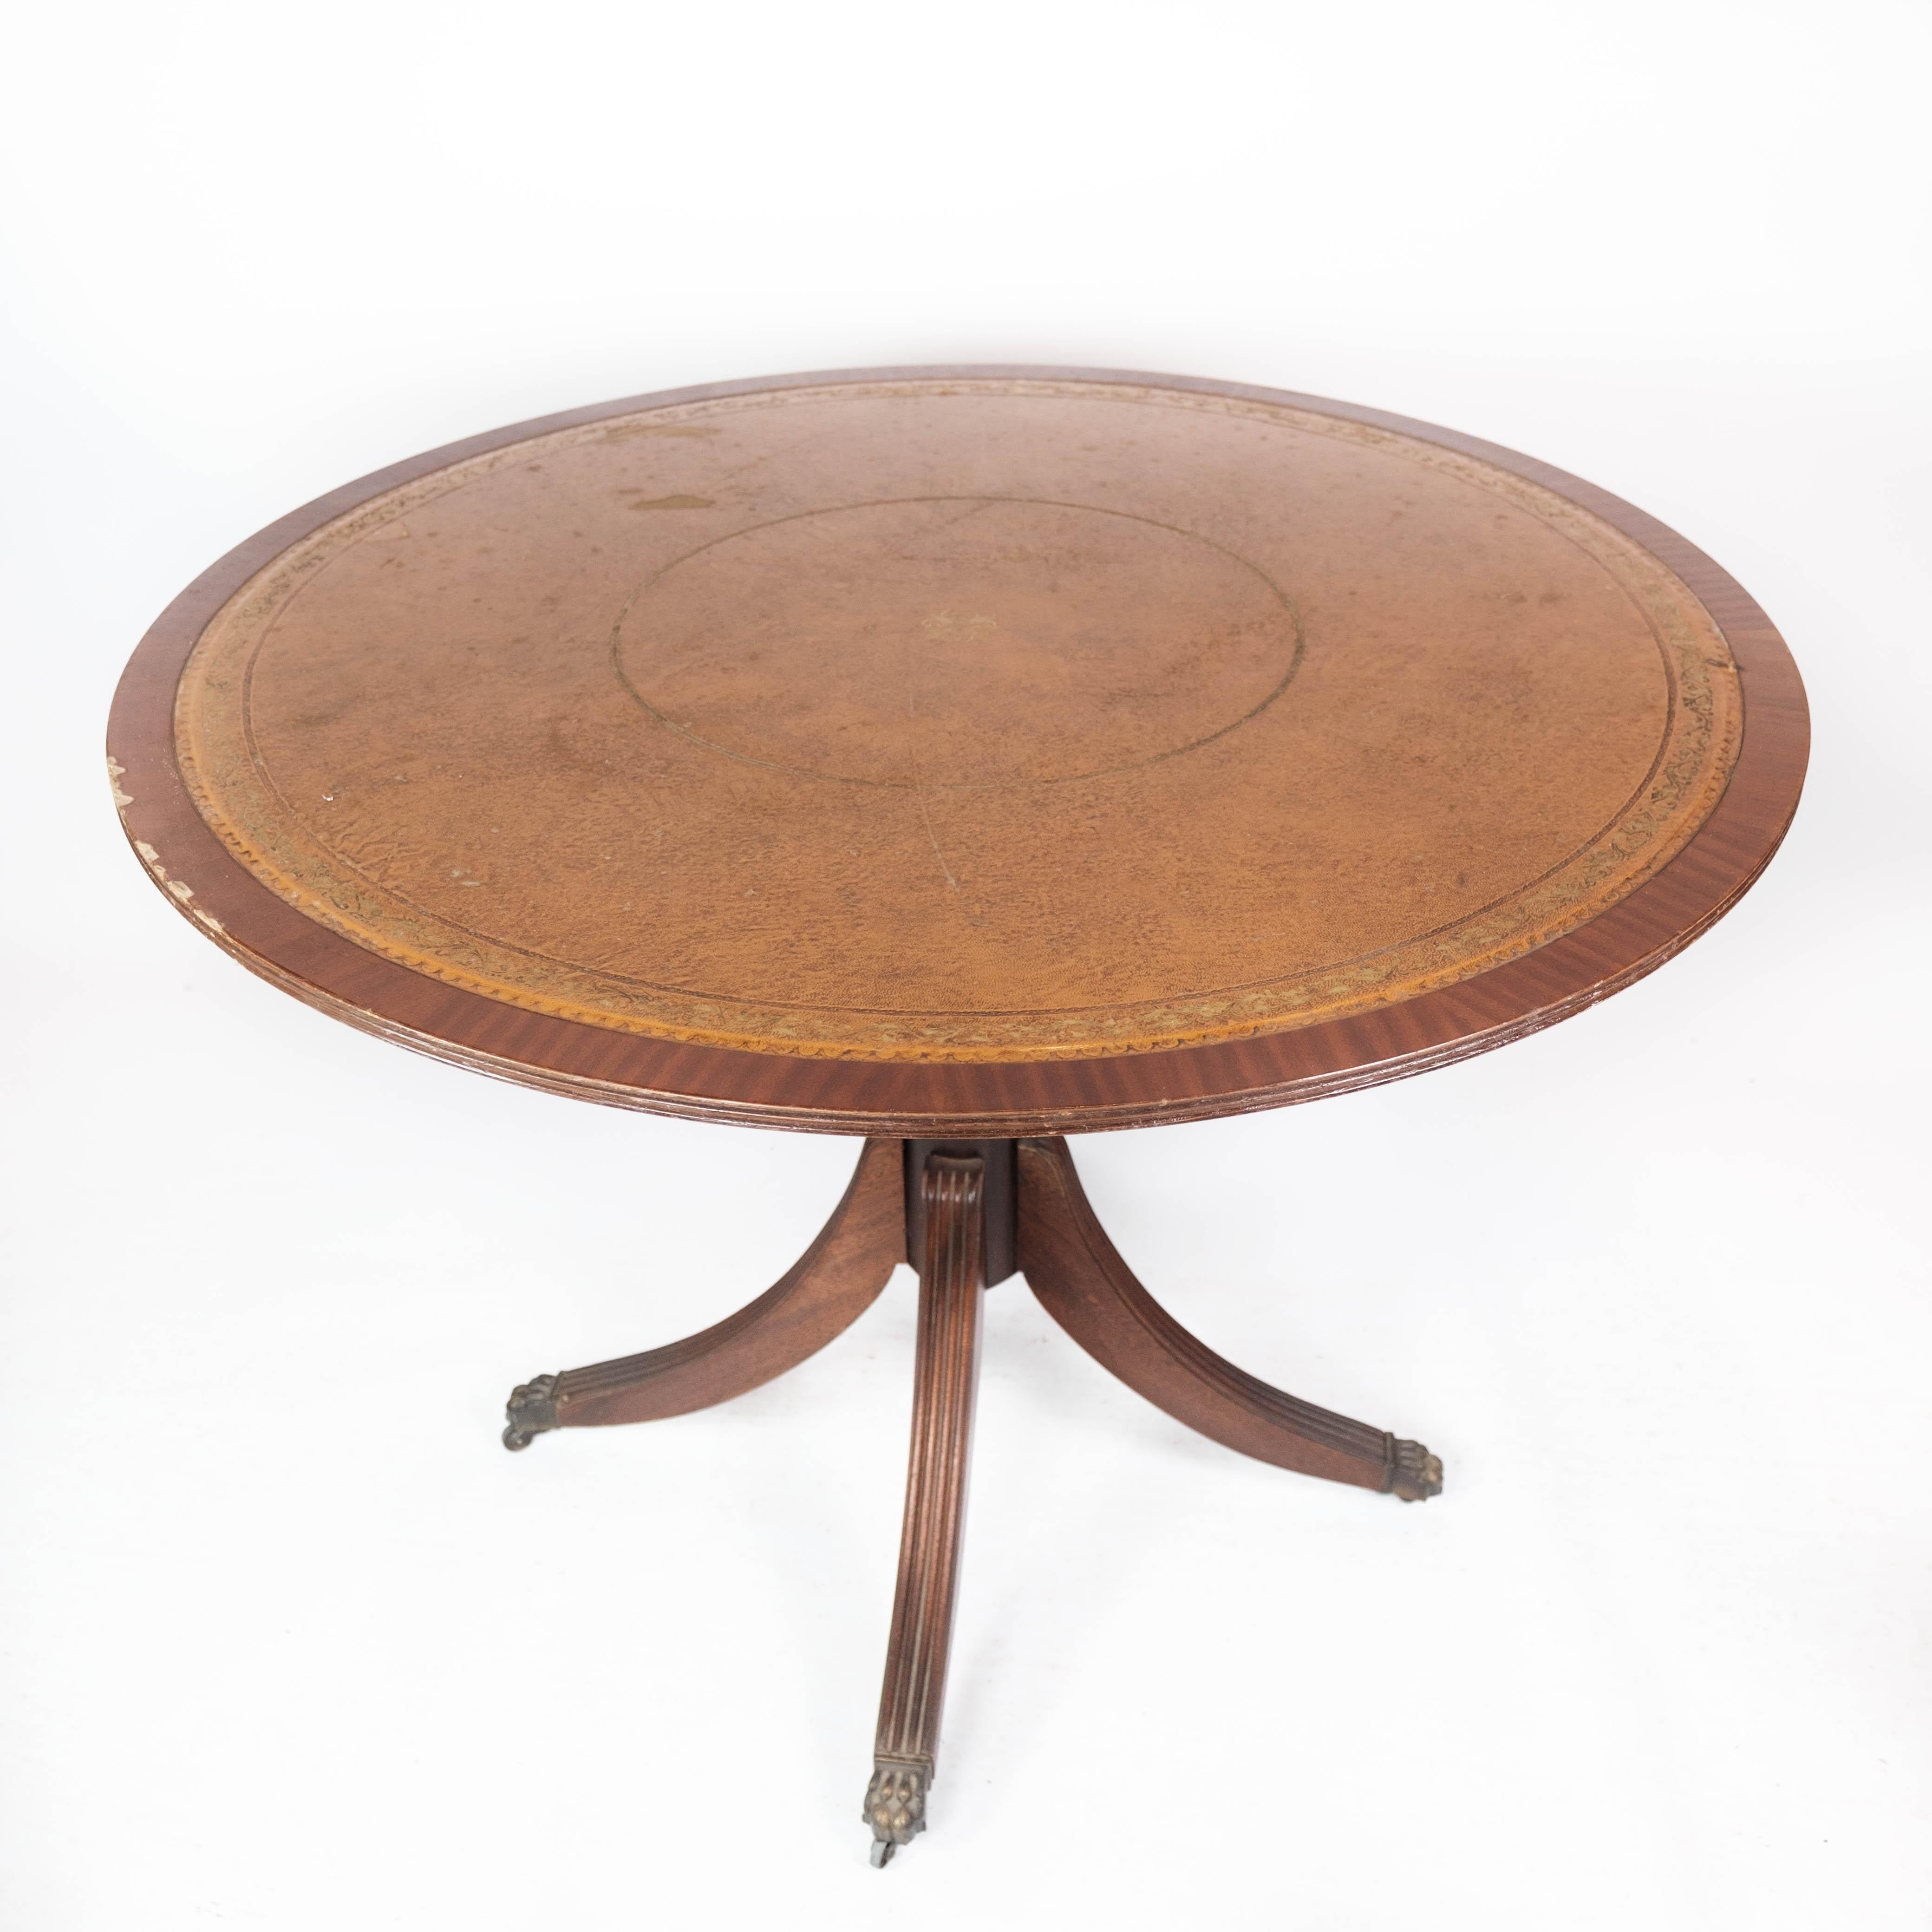 Table à manger ancienne en acajou avec incrustation de bois et de cuir, des années 1920.